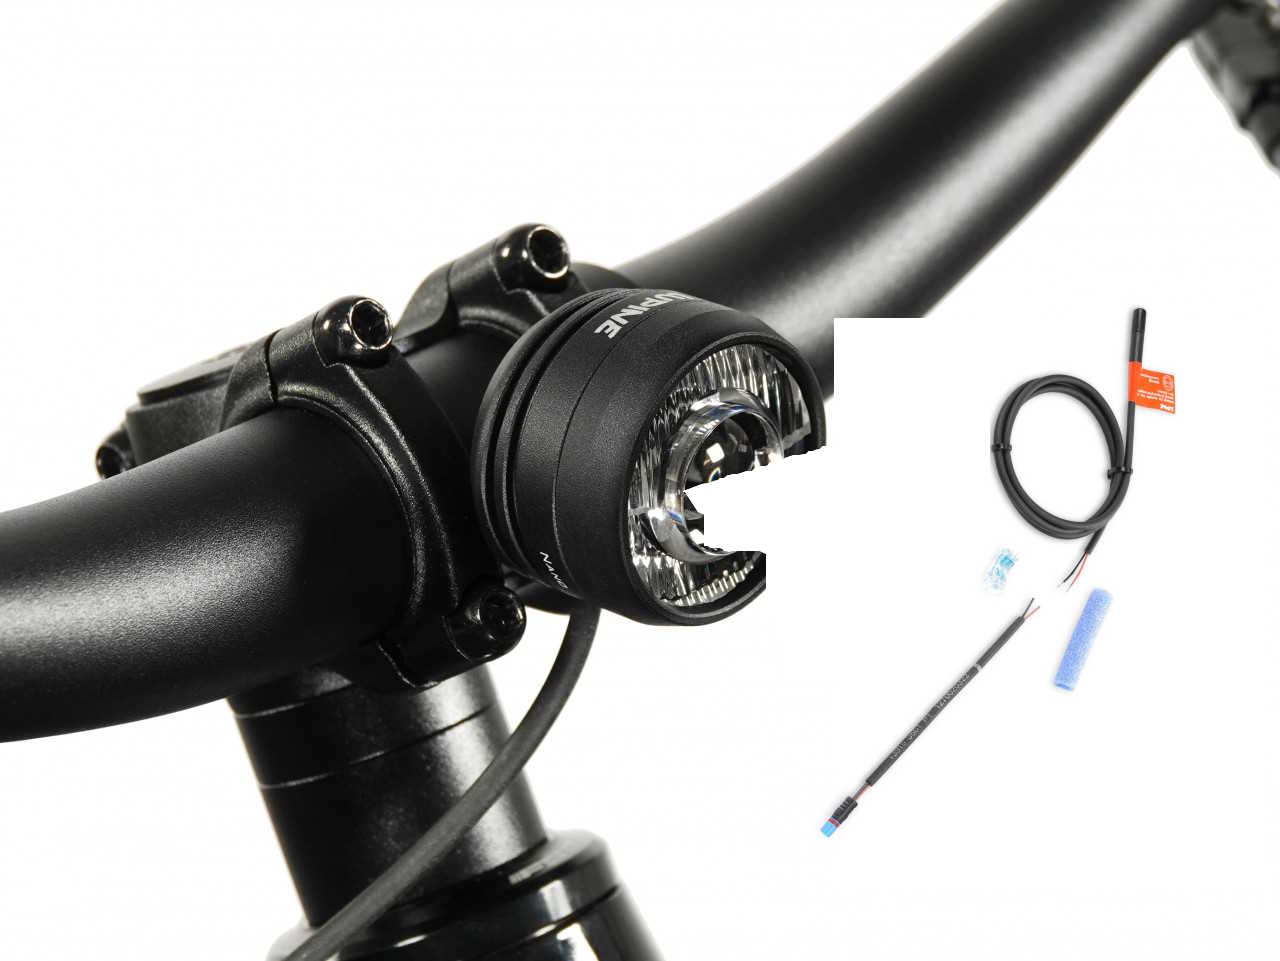 Produktbild von Lupine SL Nano für E-Bikes mit Bosch BES3 Motor, E-Bike Beleuchtung mit 900 Lumen Fernlicht, Lenkerhalter 35mm + Bluetooth Fernbedienung